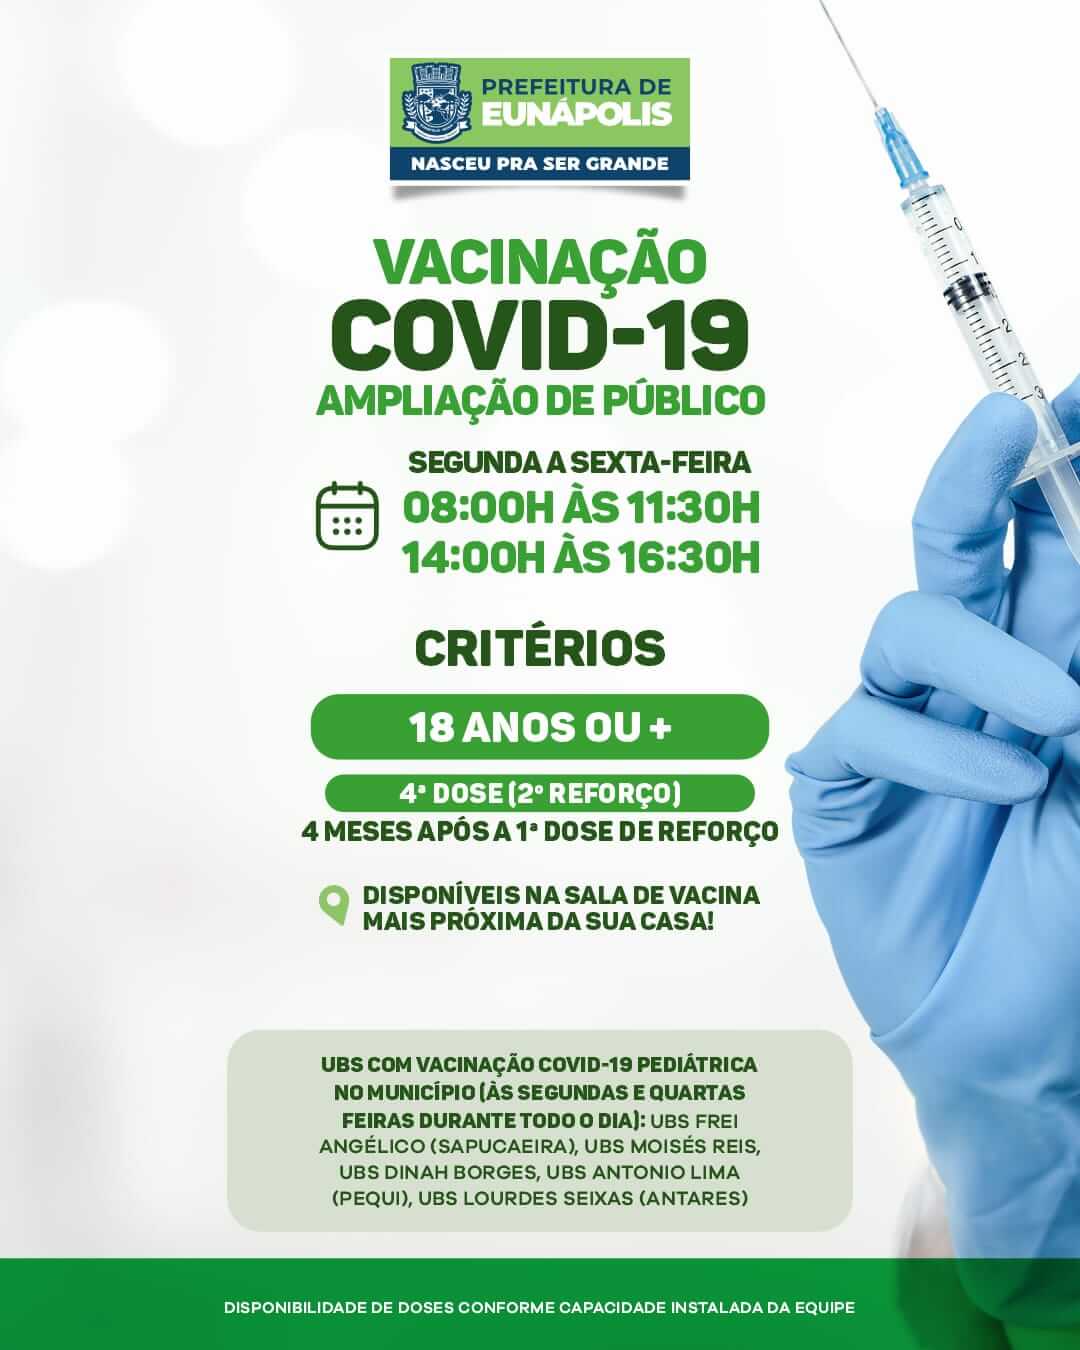 Prefeitura solicita que eunapolitanos atualizem a caderneta de vacinação 29